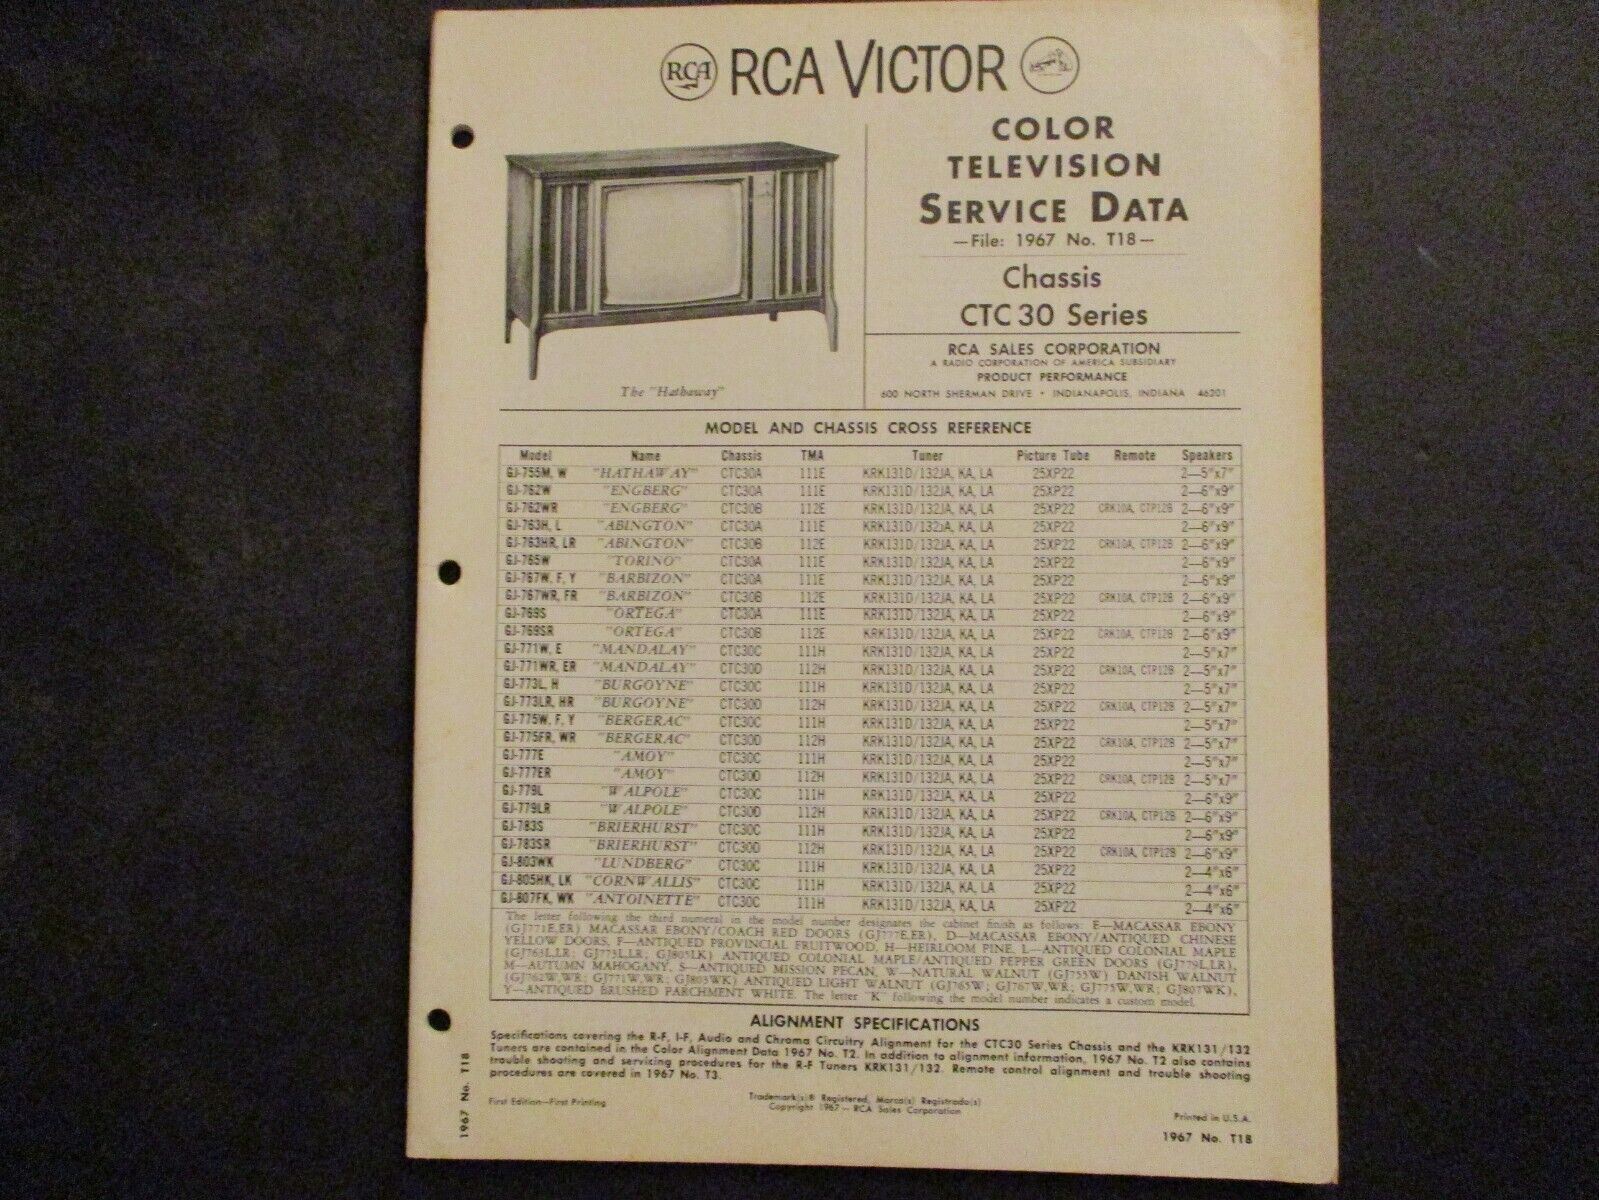 RCA Victor Color Television Service Data File 1967 No. T18 manual